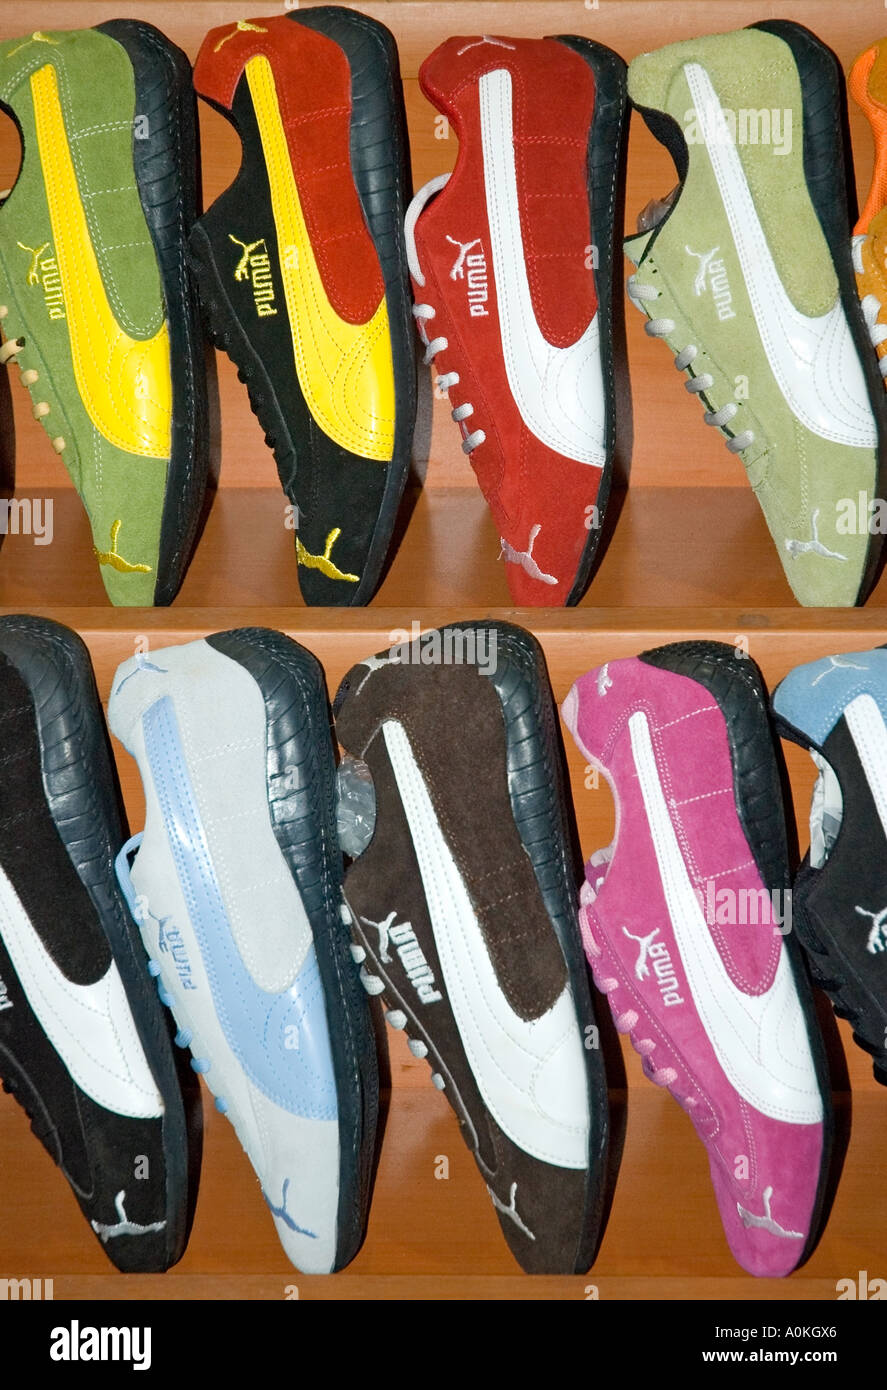 Puma badged scarpe da running, formatori, sneakers, forse falso, per la vendita nel Grand Bazaar, Istanbul, Turchia. DSC 7056 Foto Stock